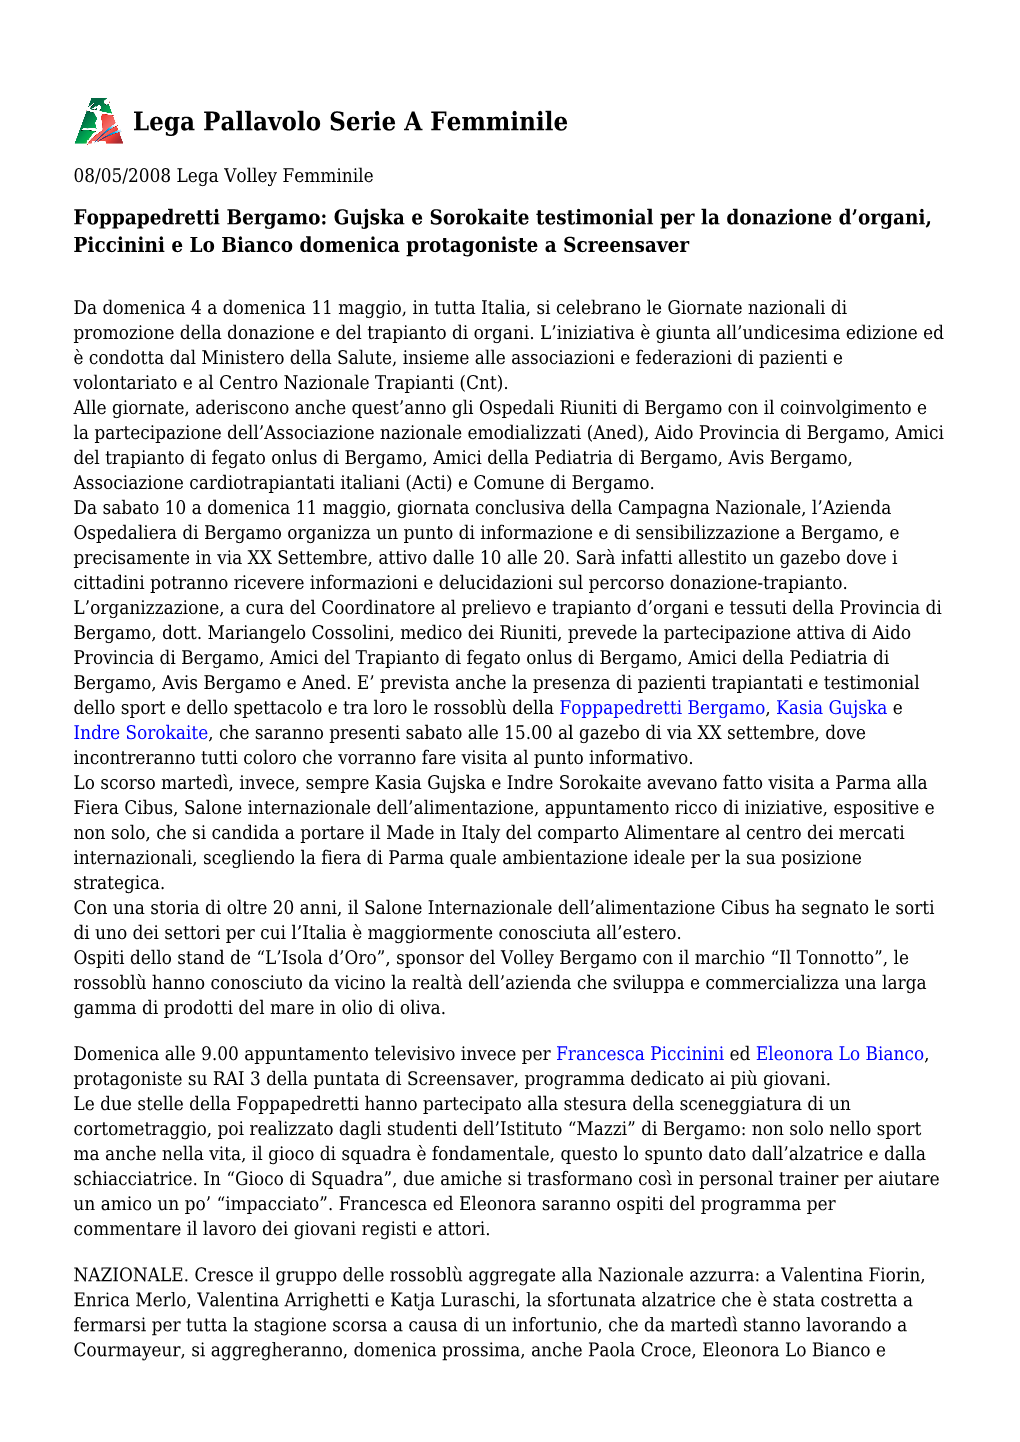 Foppapedretti Bergamo: Gujska E Sorokaite Testimonial Per La Donazione D’Organi, Piccinini E Lo Bianco Domenica Protagoniste a Screensaver